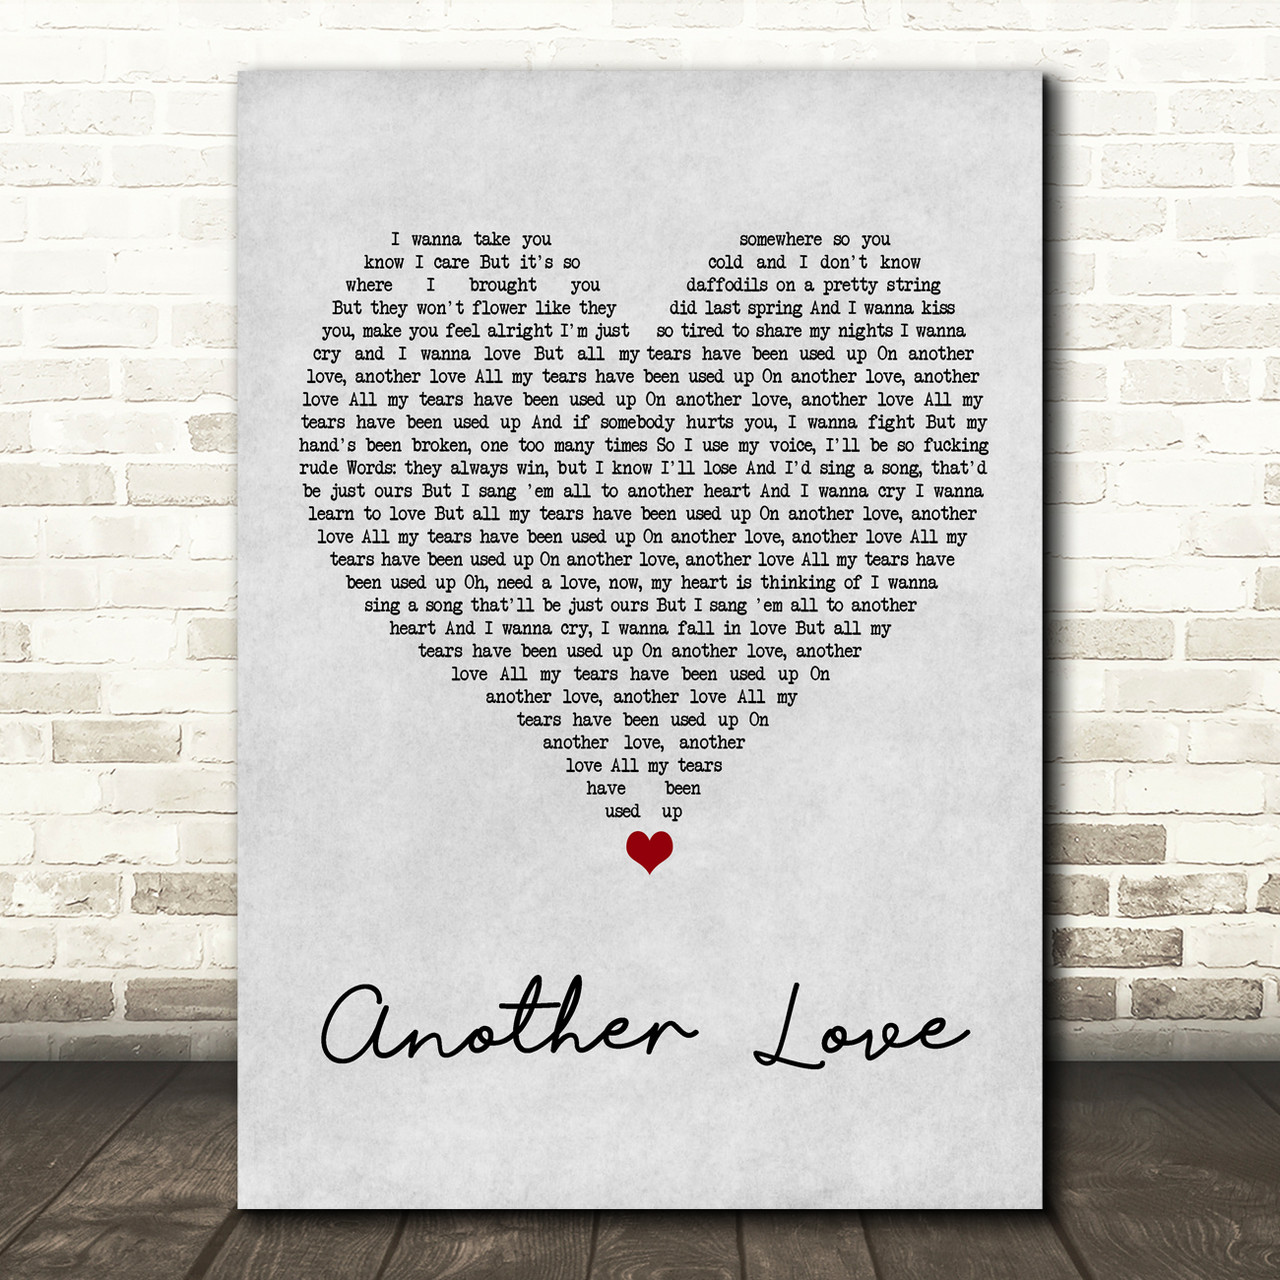 Another Love - Tom Odell  Tom odell, Another love, Odell